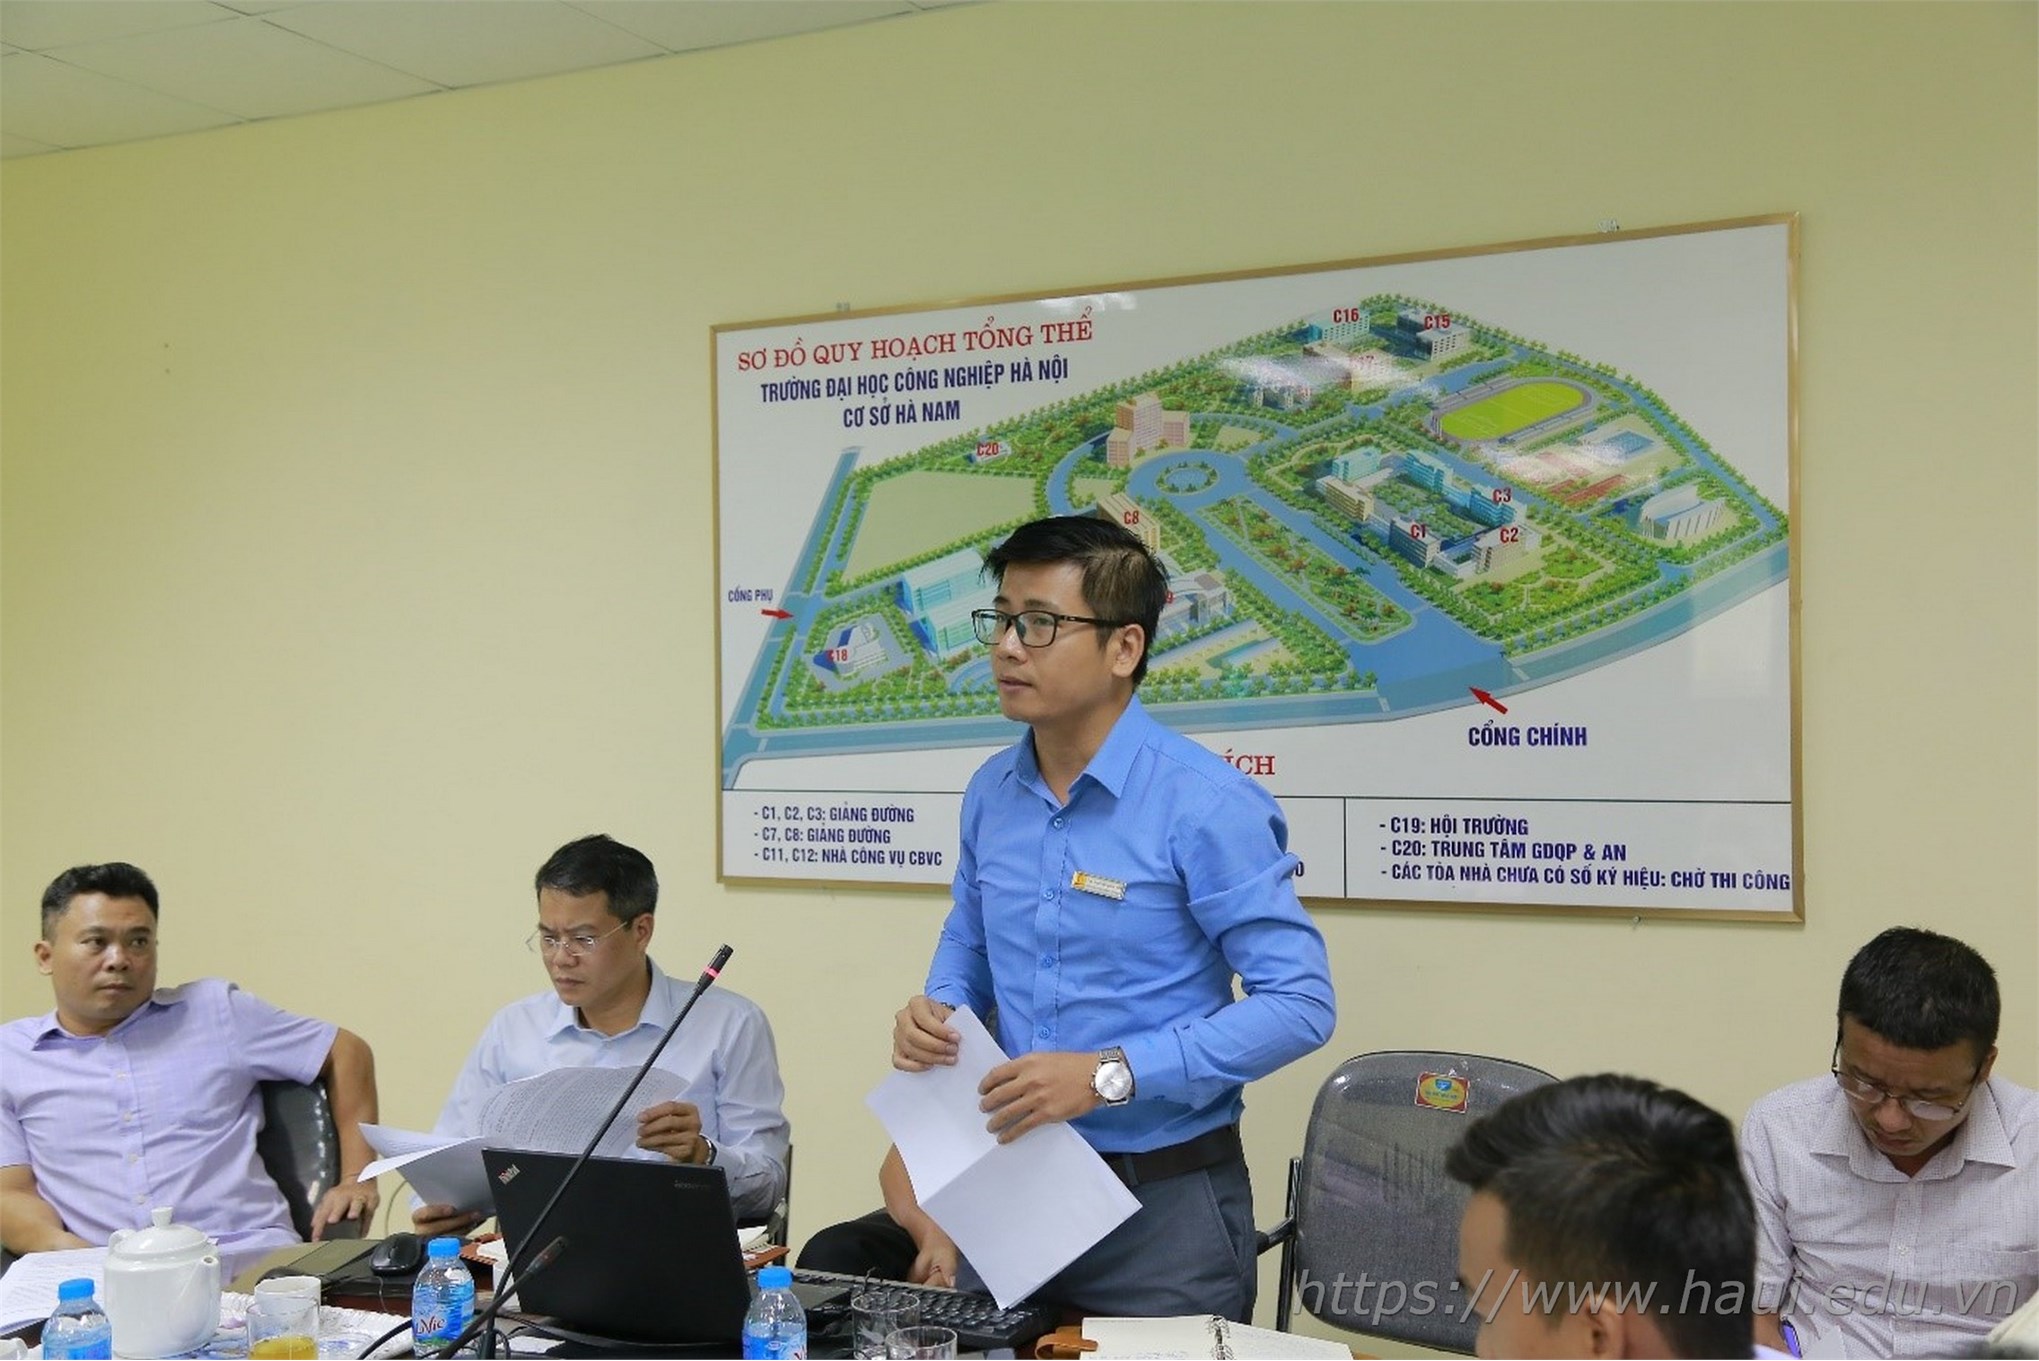 Đại học Công nghiệp Hà Nội tổng kết công tác đảm bảo ANTT năm học 2018 - 2019 và Sơ kết thực hiện mô hình “Trung tâm KTX đảm bảo về ANTT, không tệ nạn xã hội”